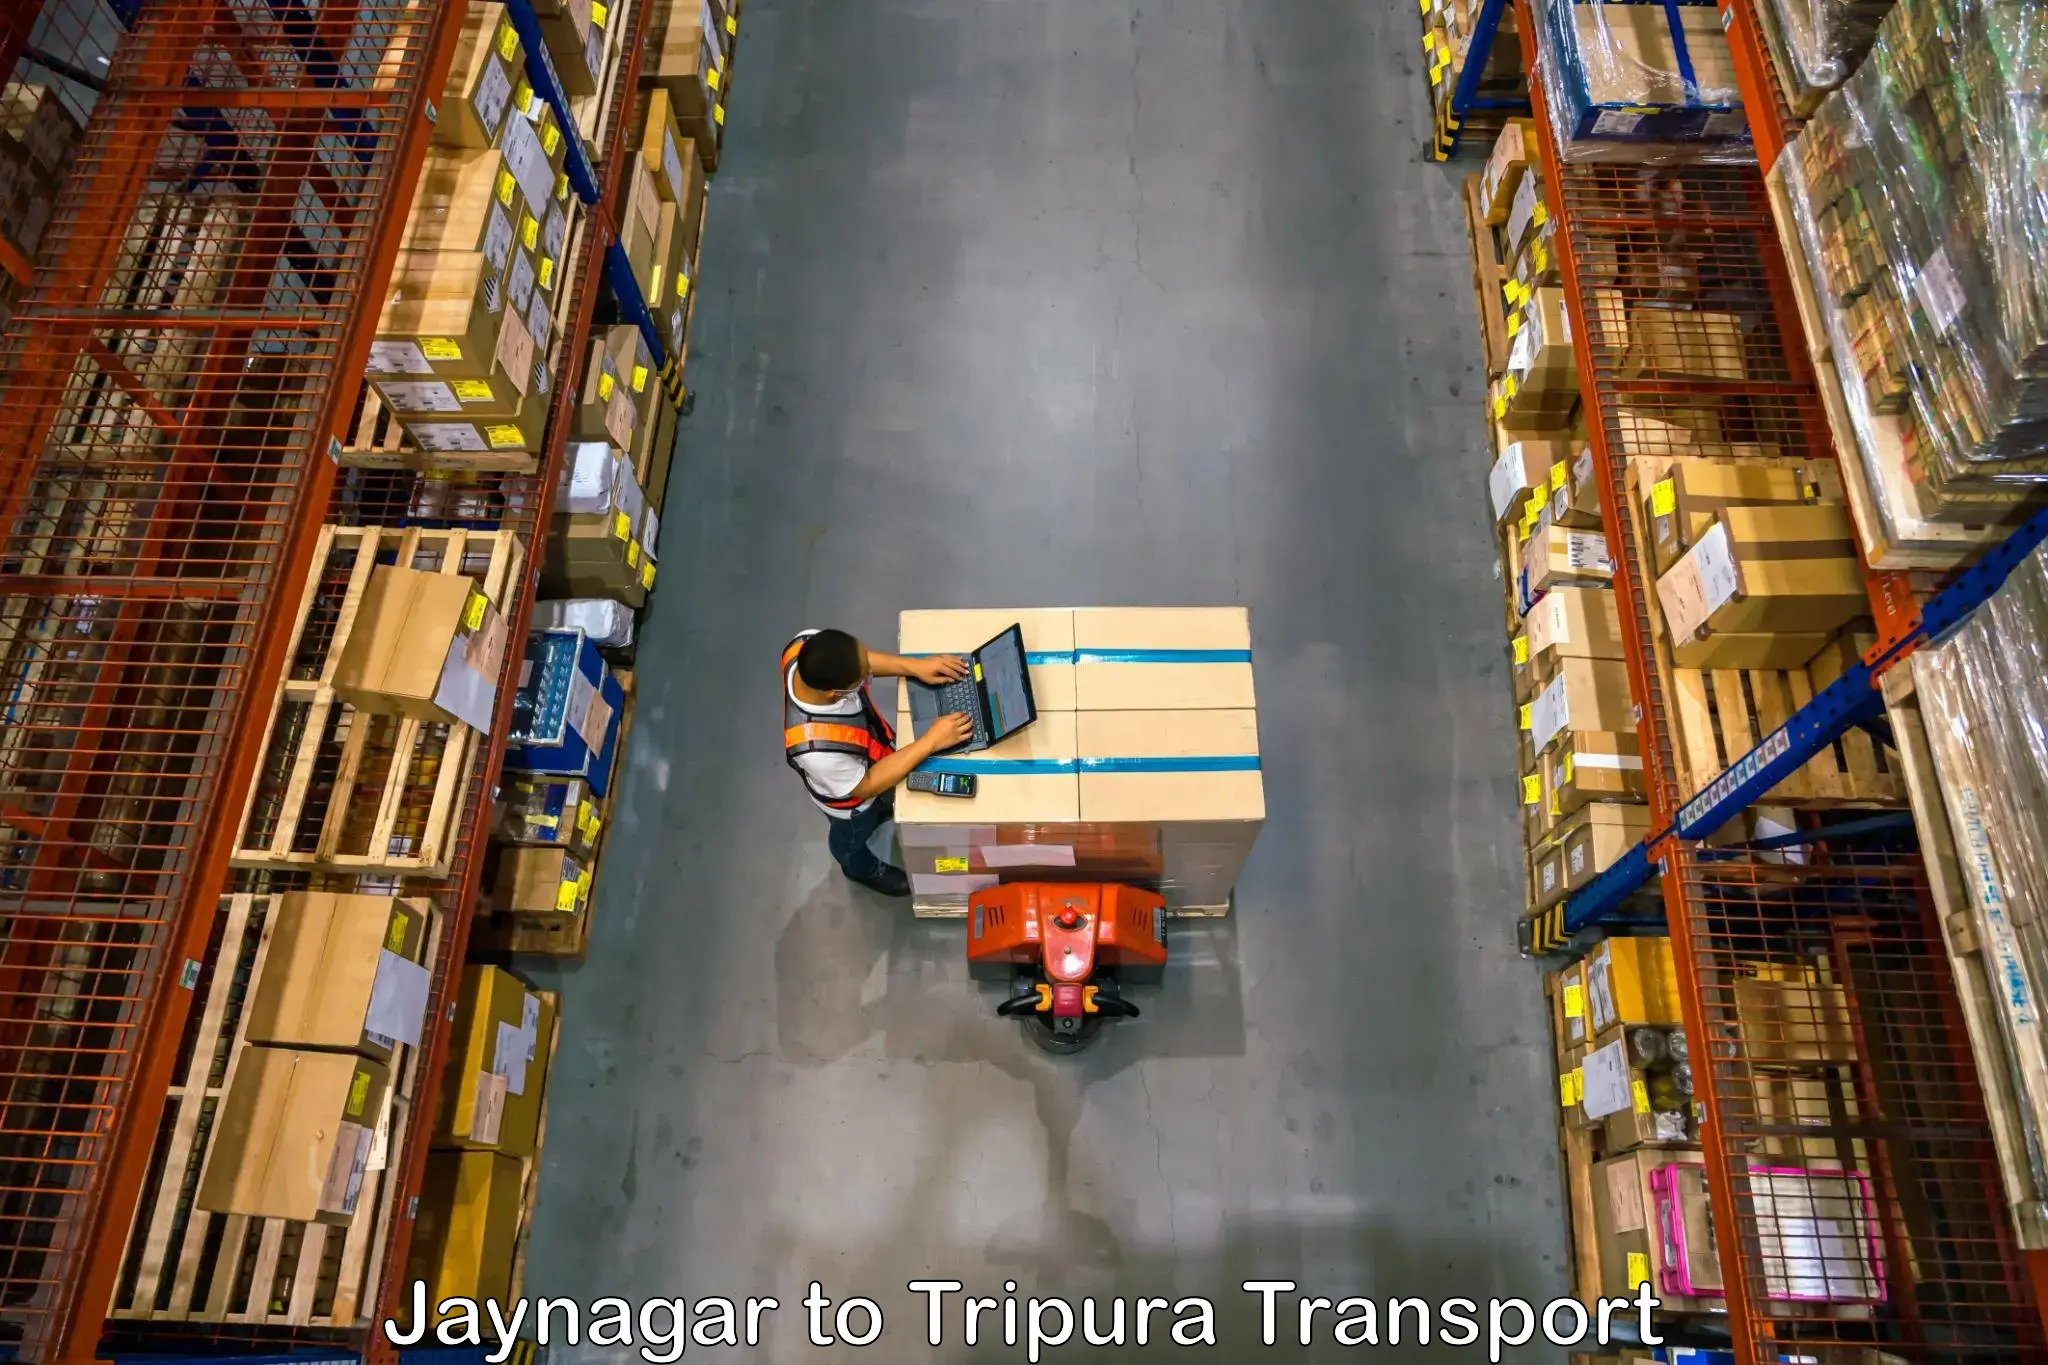 Cycle transportation service Jaynagar to IIIT Agartala